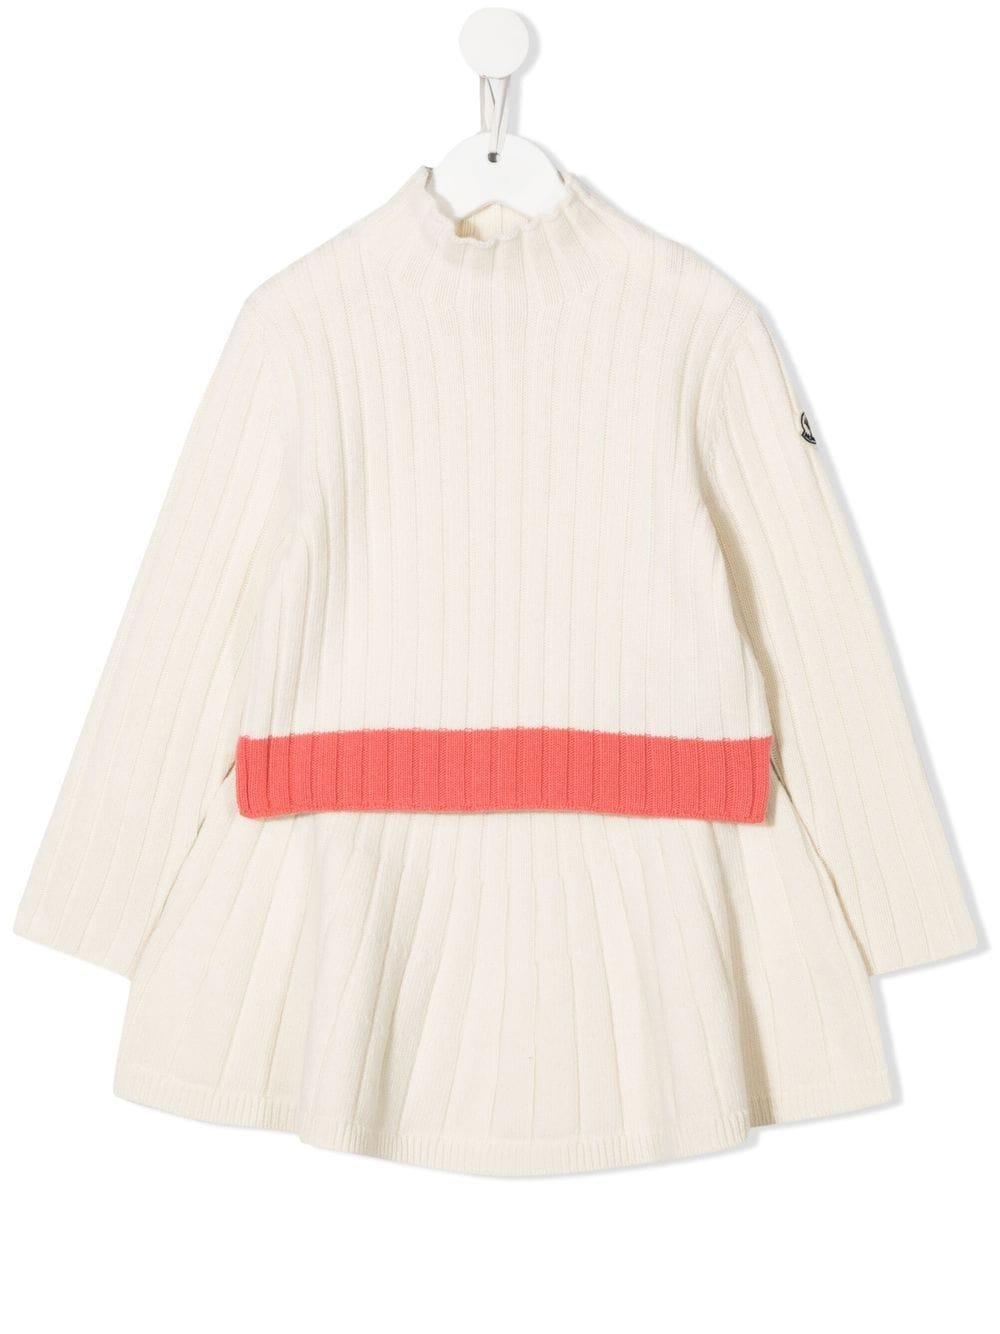 Moncler White Virgin Wool Dress